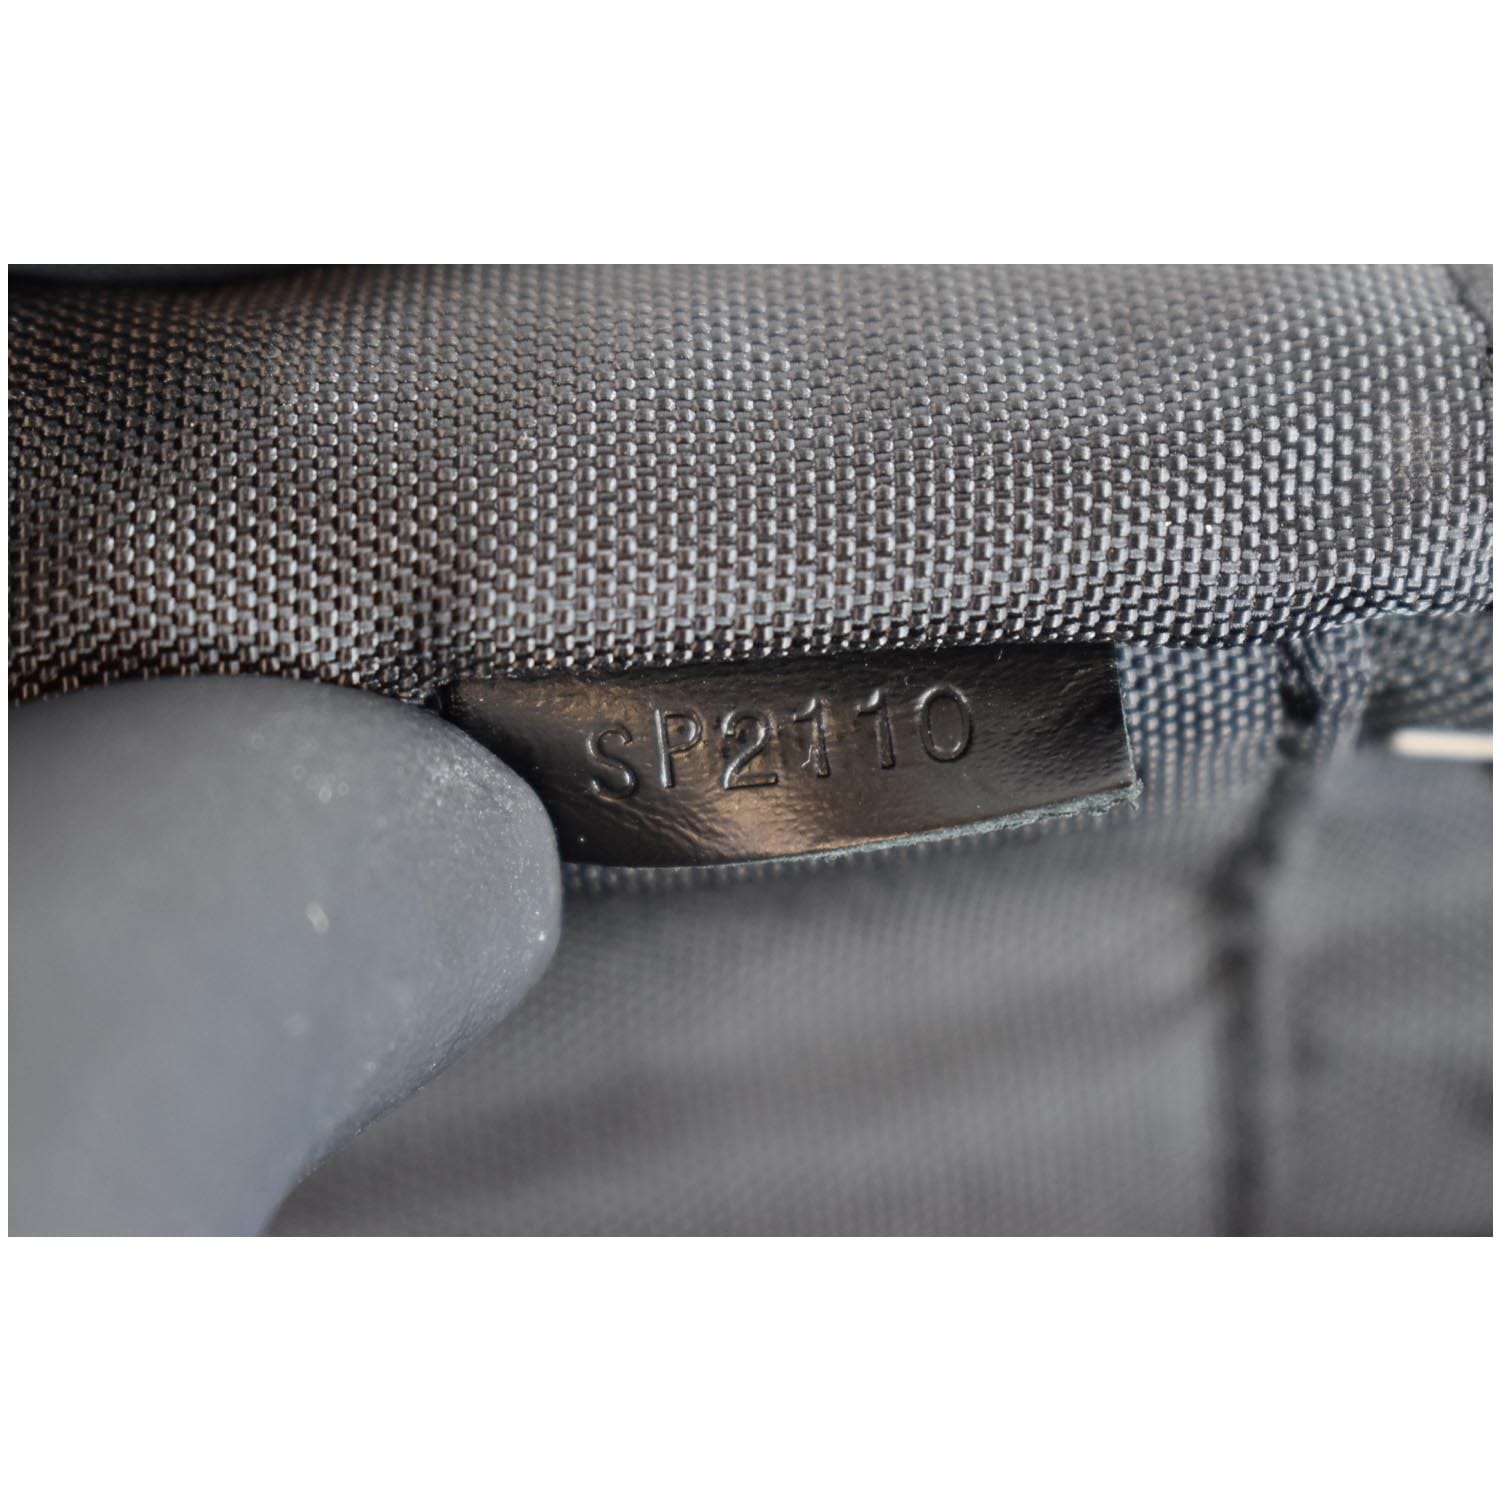 Louis Vuitton 'Damier Graphite Pegase 55' Suitcase – Lux Second Chance